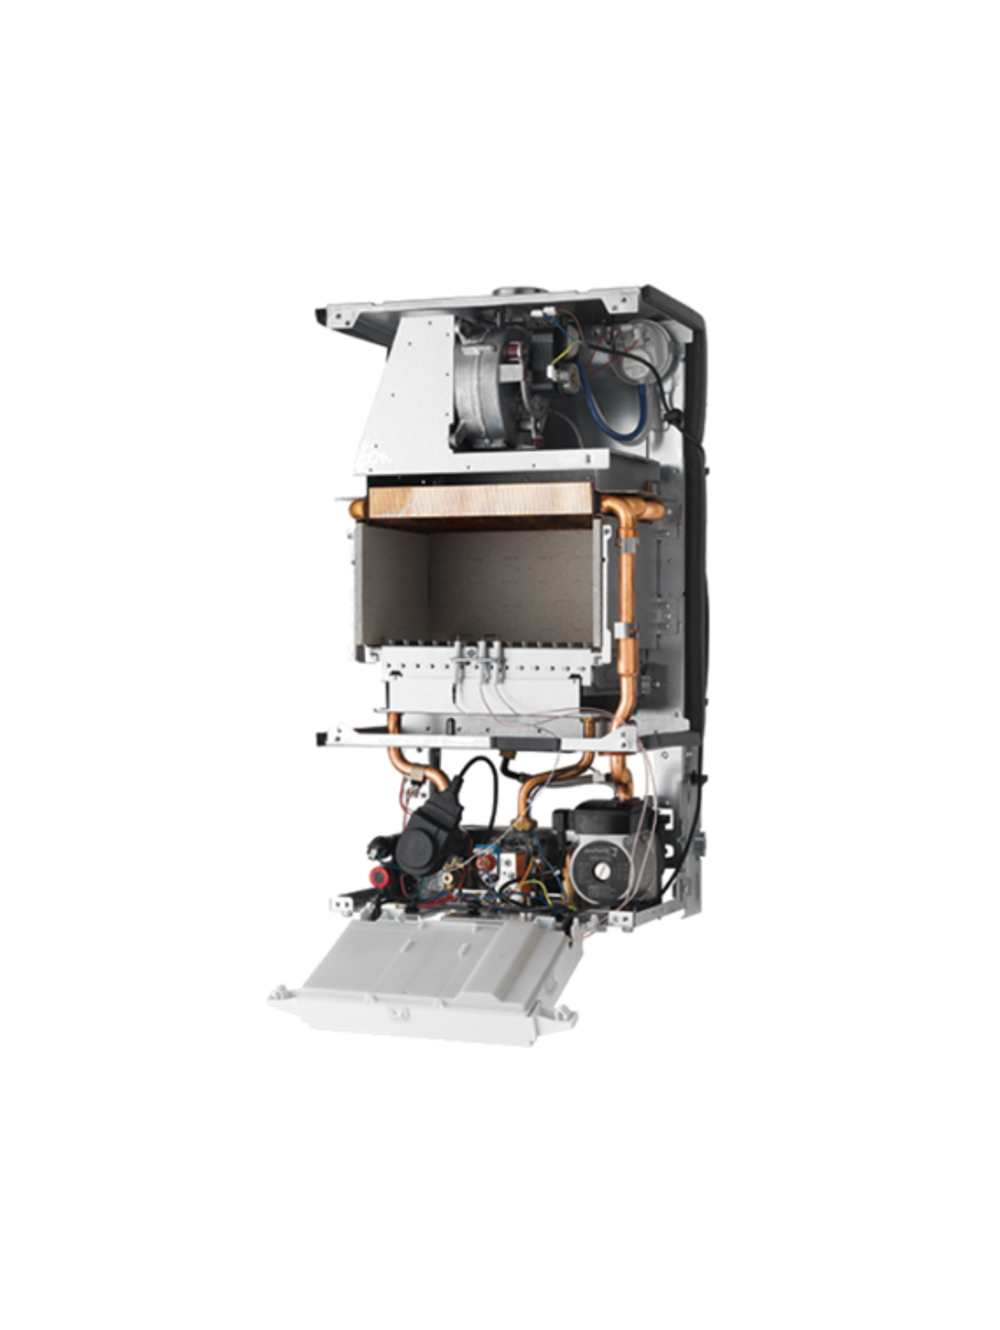 Газовый котел Protherm Гепард 23 MOV (2015) 23 кВт двухконтурный